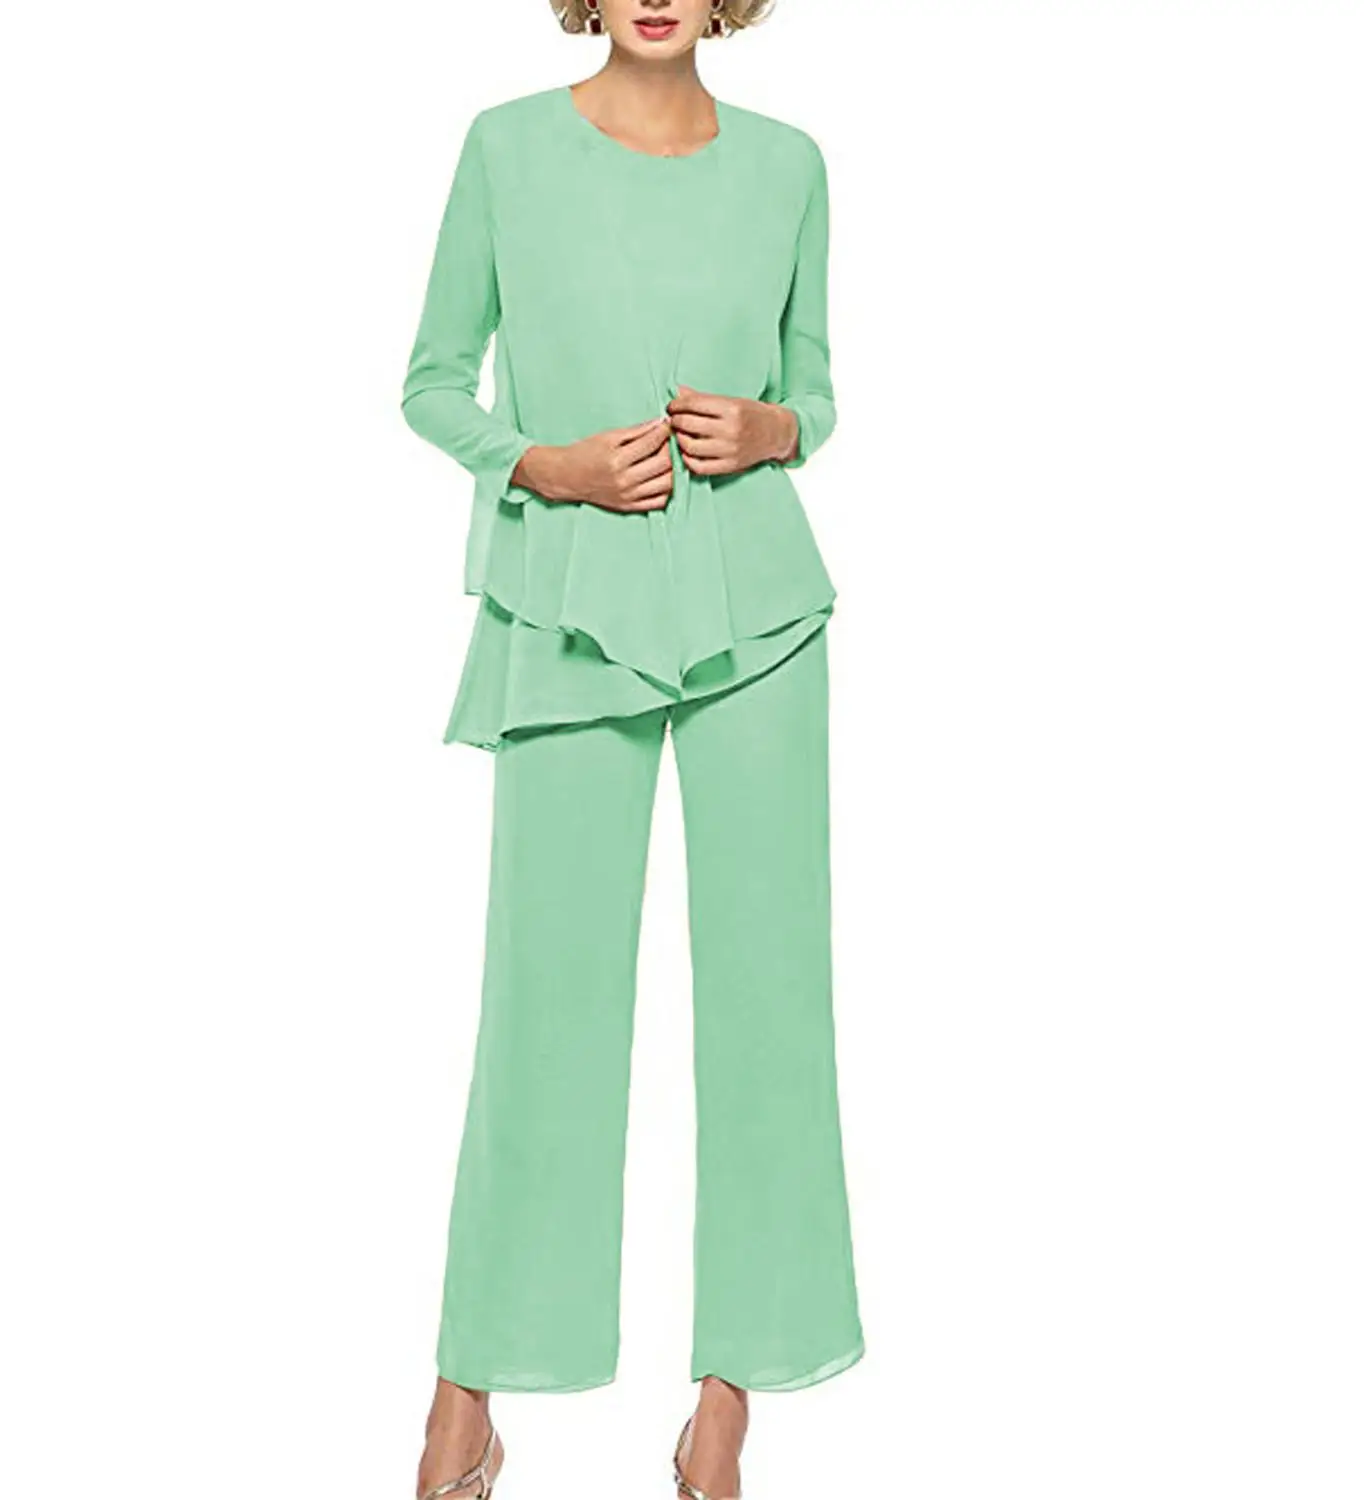 Женский костюм из 3 предметов: шифоновое платье с рюшами для матери невесты и брюки, цвет шампанского, зеленый, розовый, короткий жакет, наряд для свадьбы - Цвет: Mint